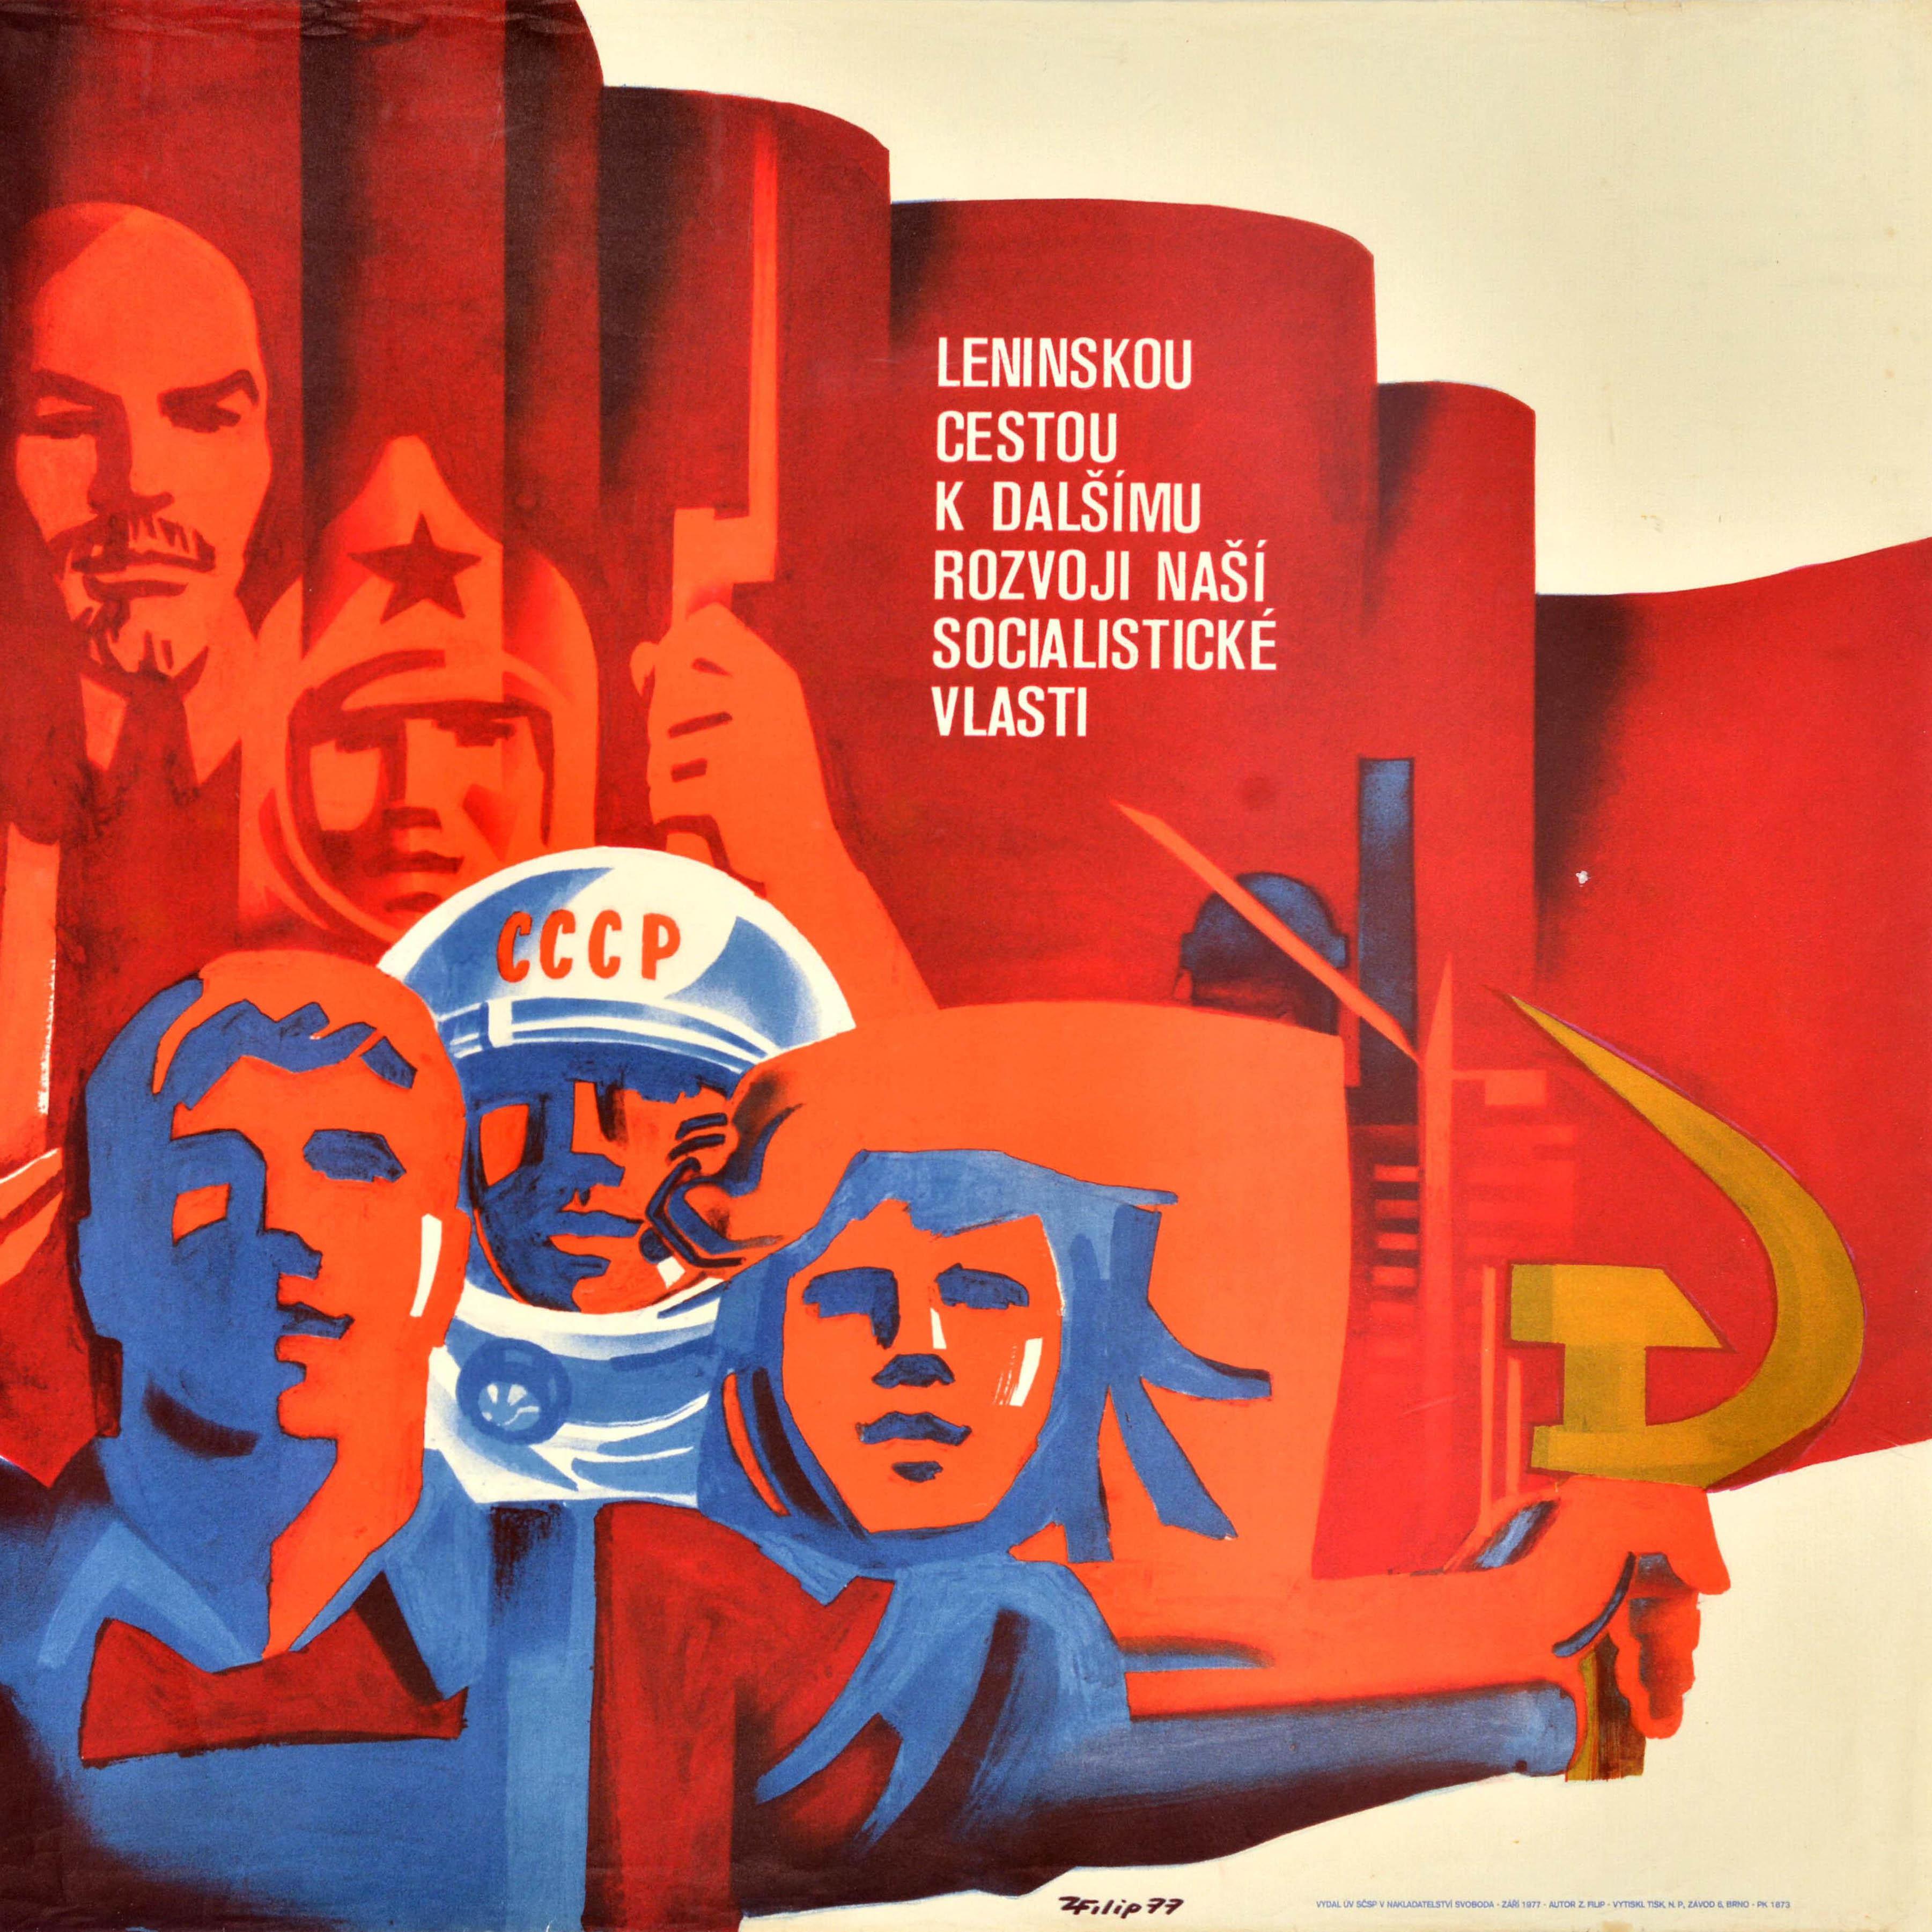 Originales sowjetisches Propagandaplakat zum Jahrestag der Oktoberrevolution mit der Abbildung eines Arbeiters in Latzhose, der eine rote Fahne und Hammer und Sichel hält, eines Kosmonauten in einem Raumfahrerhelm mit der Aufschrift CCCP / UdSSR und